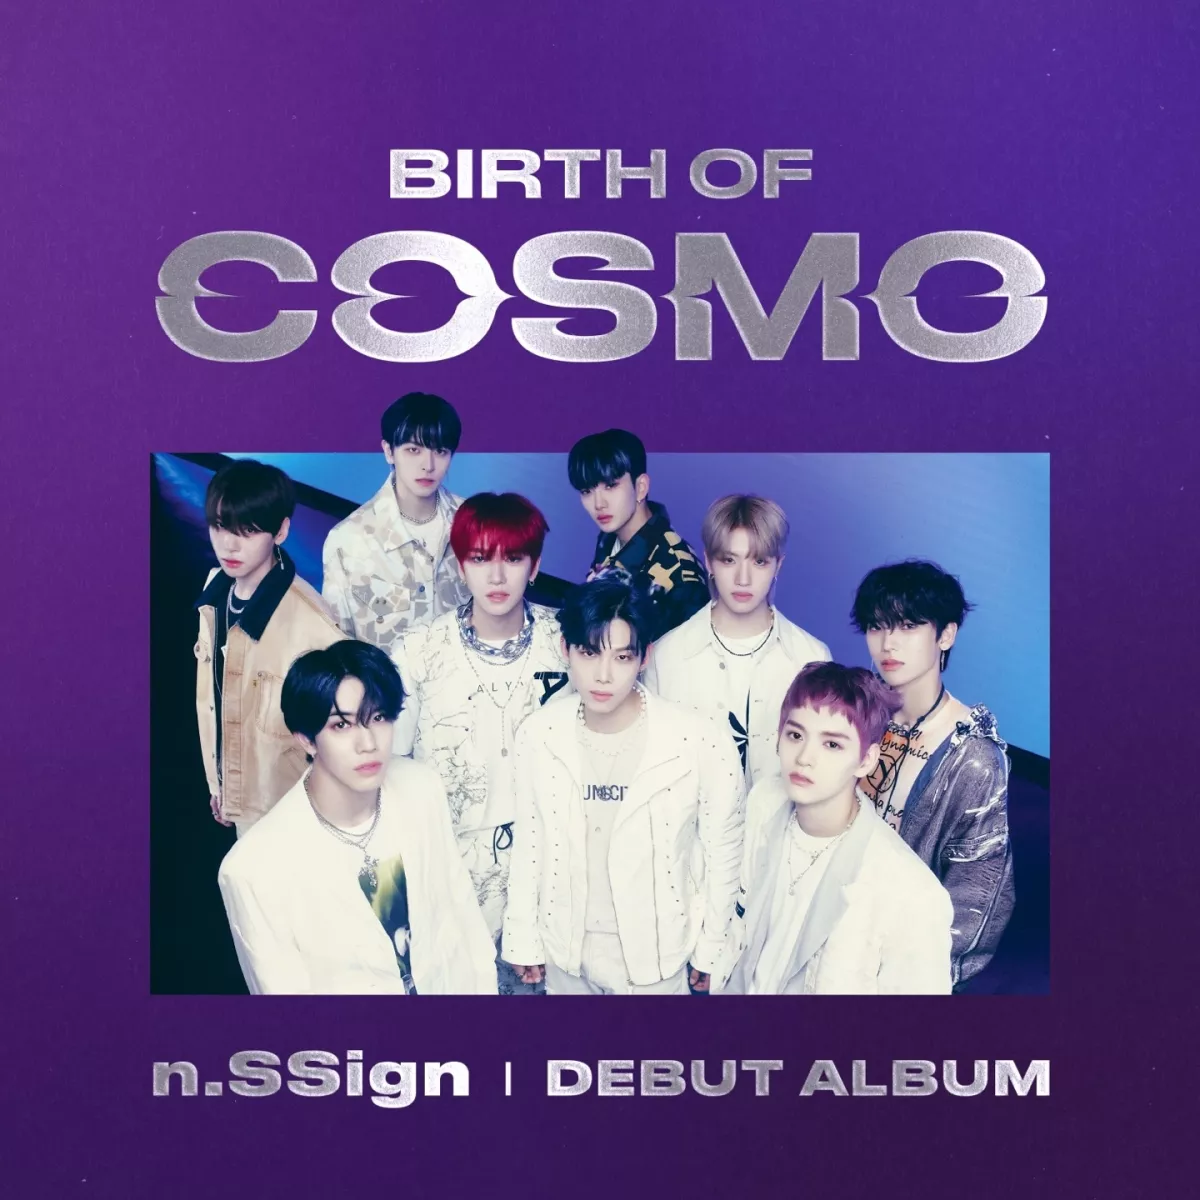 N.SSign официально представляют дебютный альбом "BIRTH OF COSMO"